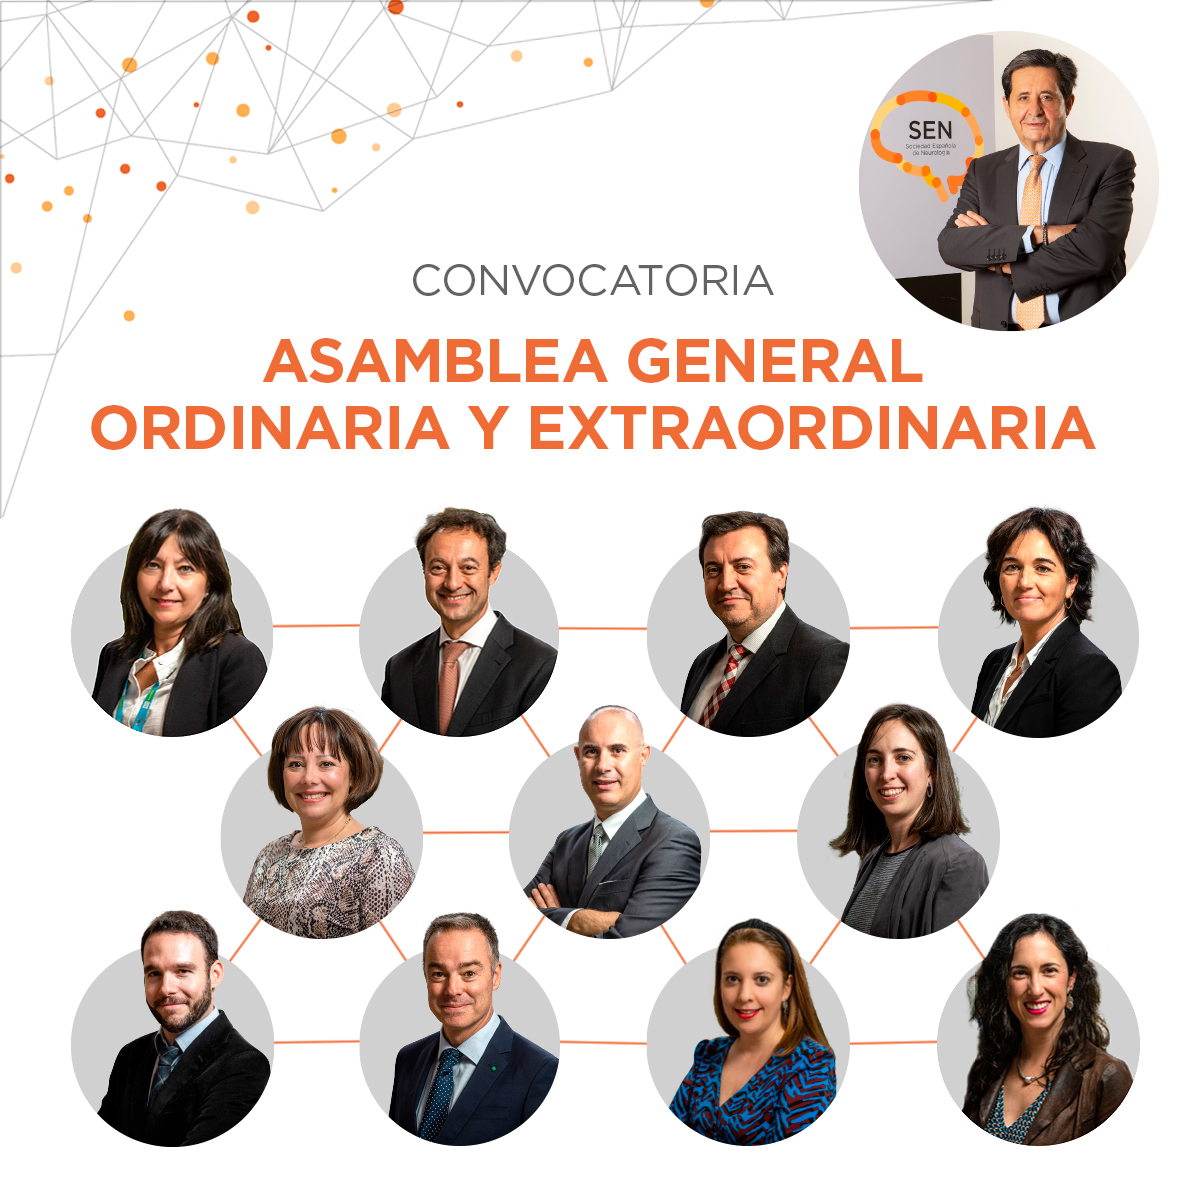 Convocatoria de la Asamblea General Ordinaria y Extraordinaria de socios de la Sociedad Española de Neurología